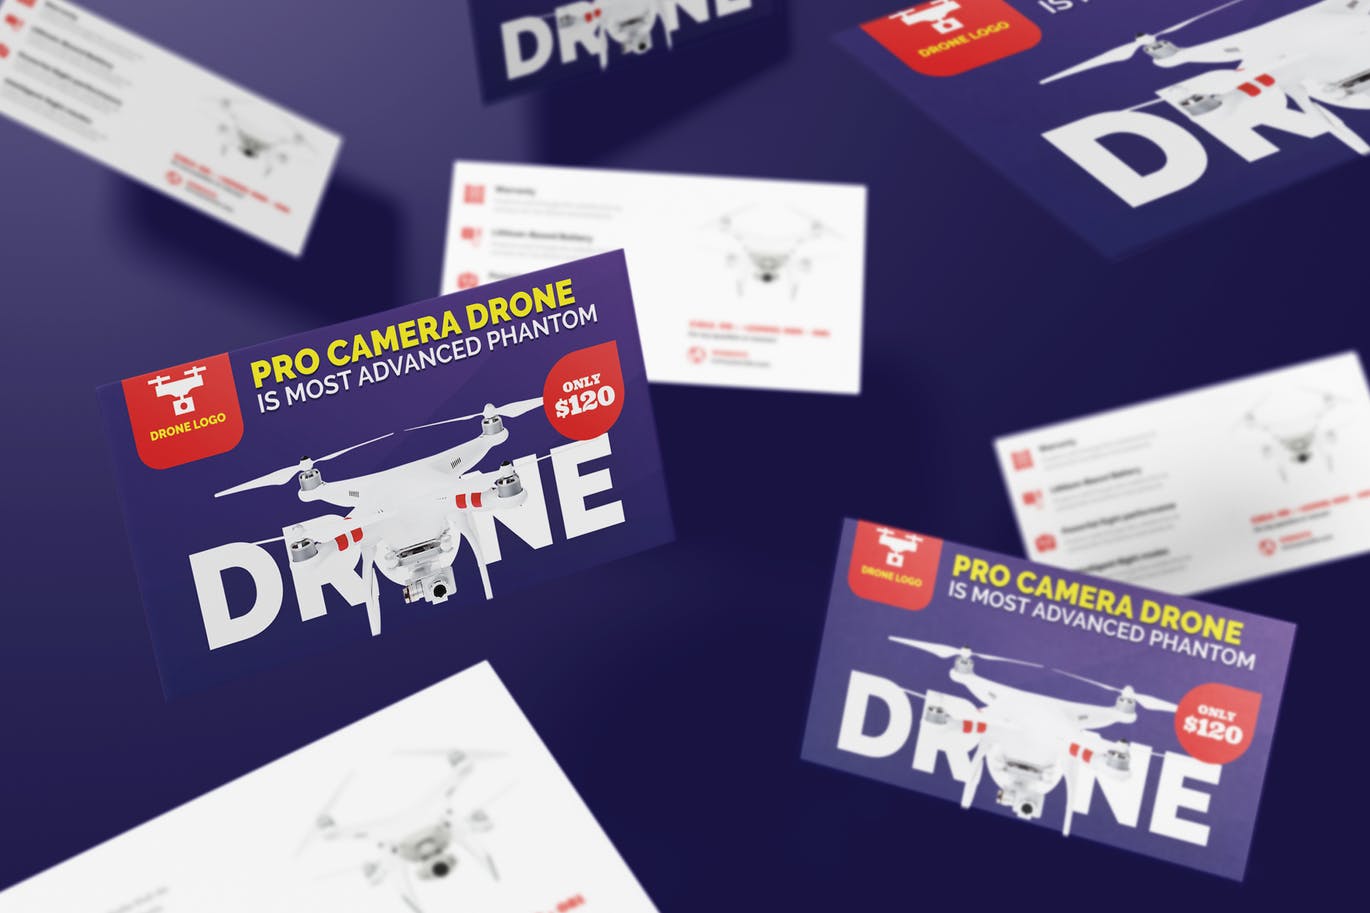 无人机销售代表/销售经理16图库精选名片模板 Drone Product Showcase Business Card插图